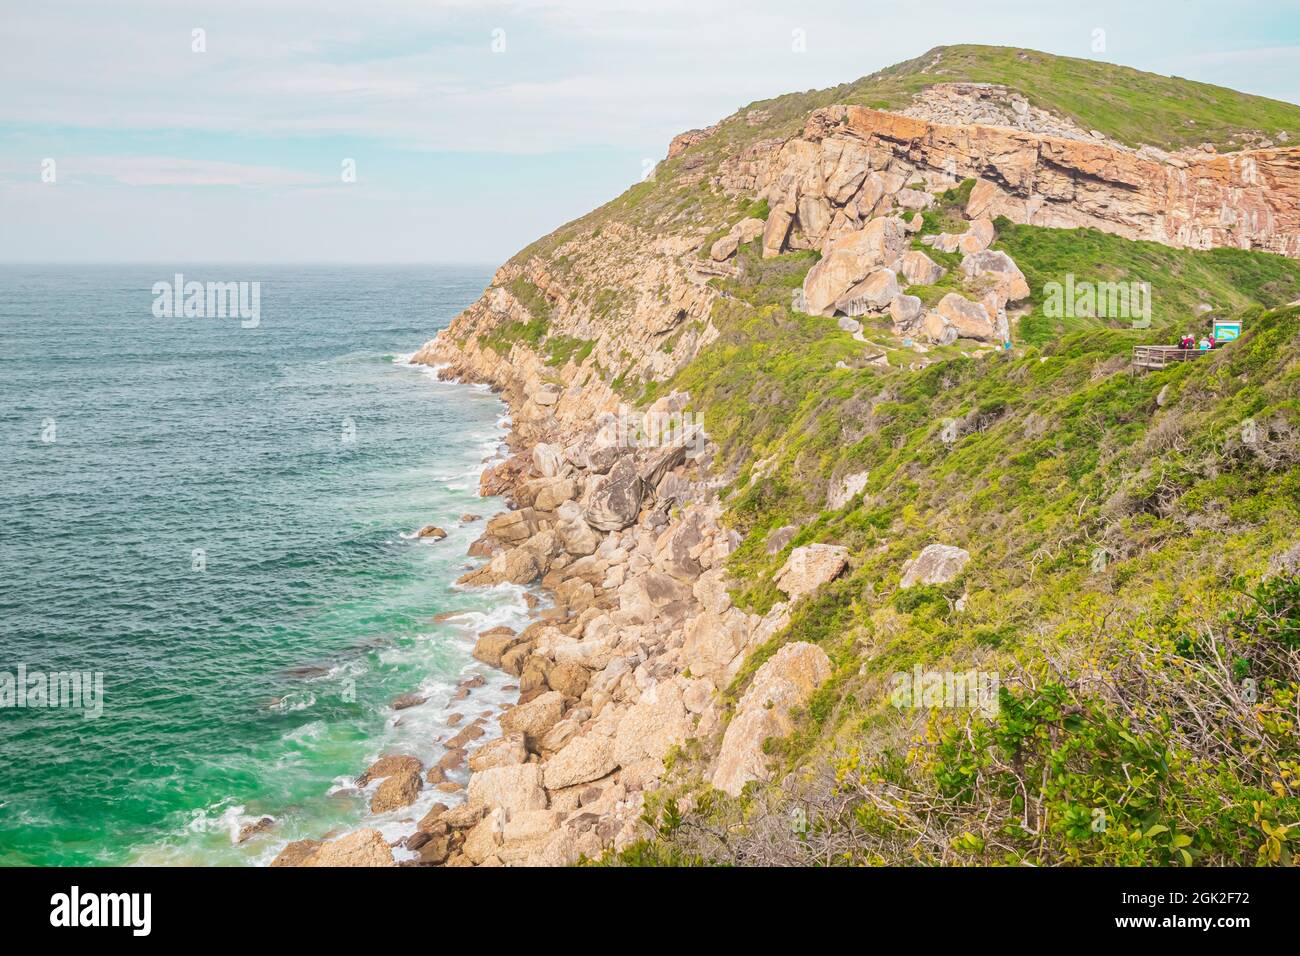 La vista della Riserva Naturale di Robberg, che è il Monumento Nazionale del Sud Africa e Sito Patrimonio Mondiale dell'Umanita' presso la Baia di Plettenberg lungo la Garden Route. Foto Stock